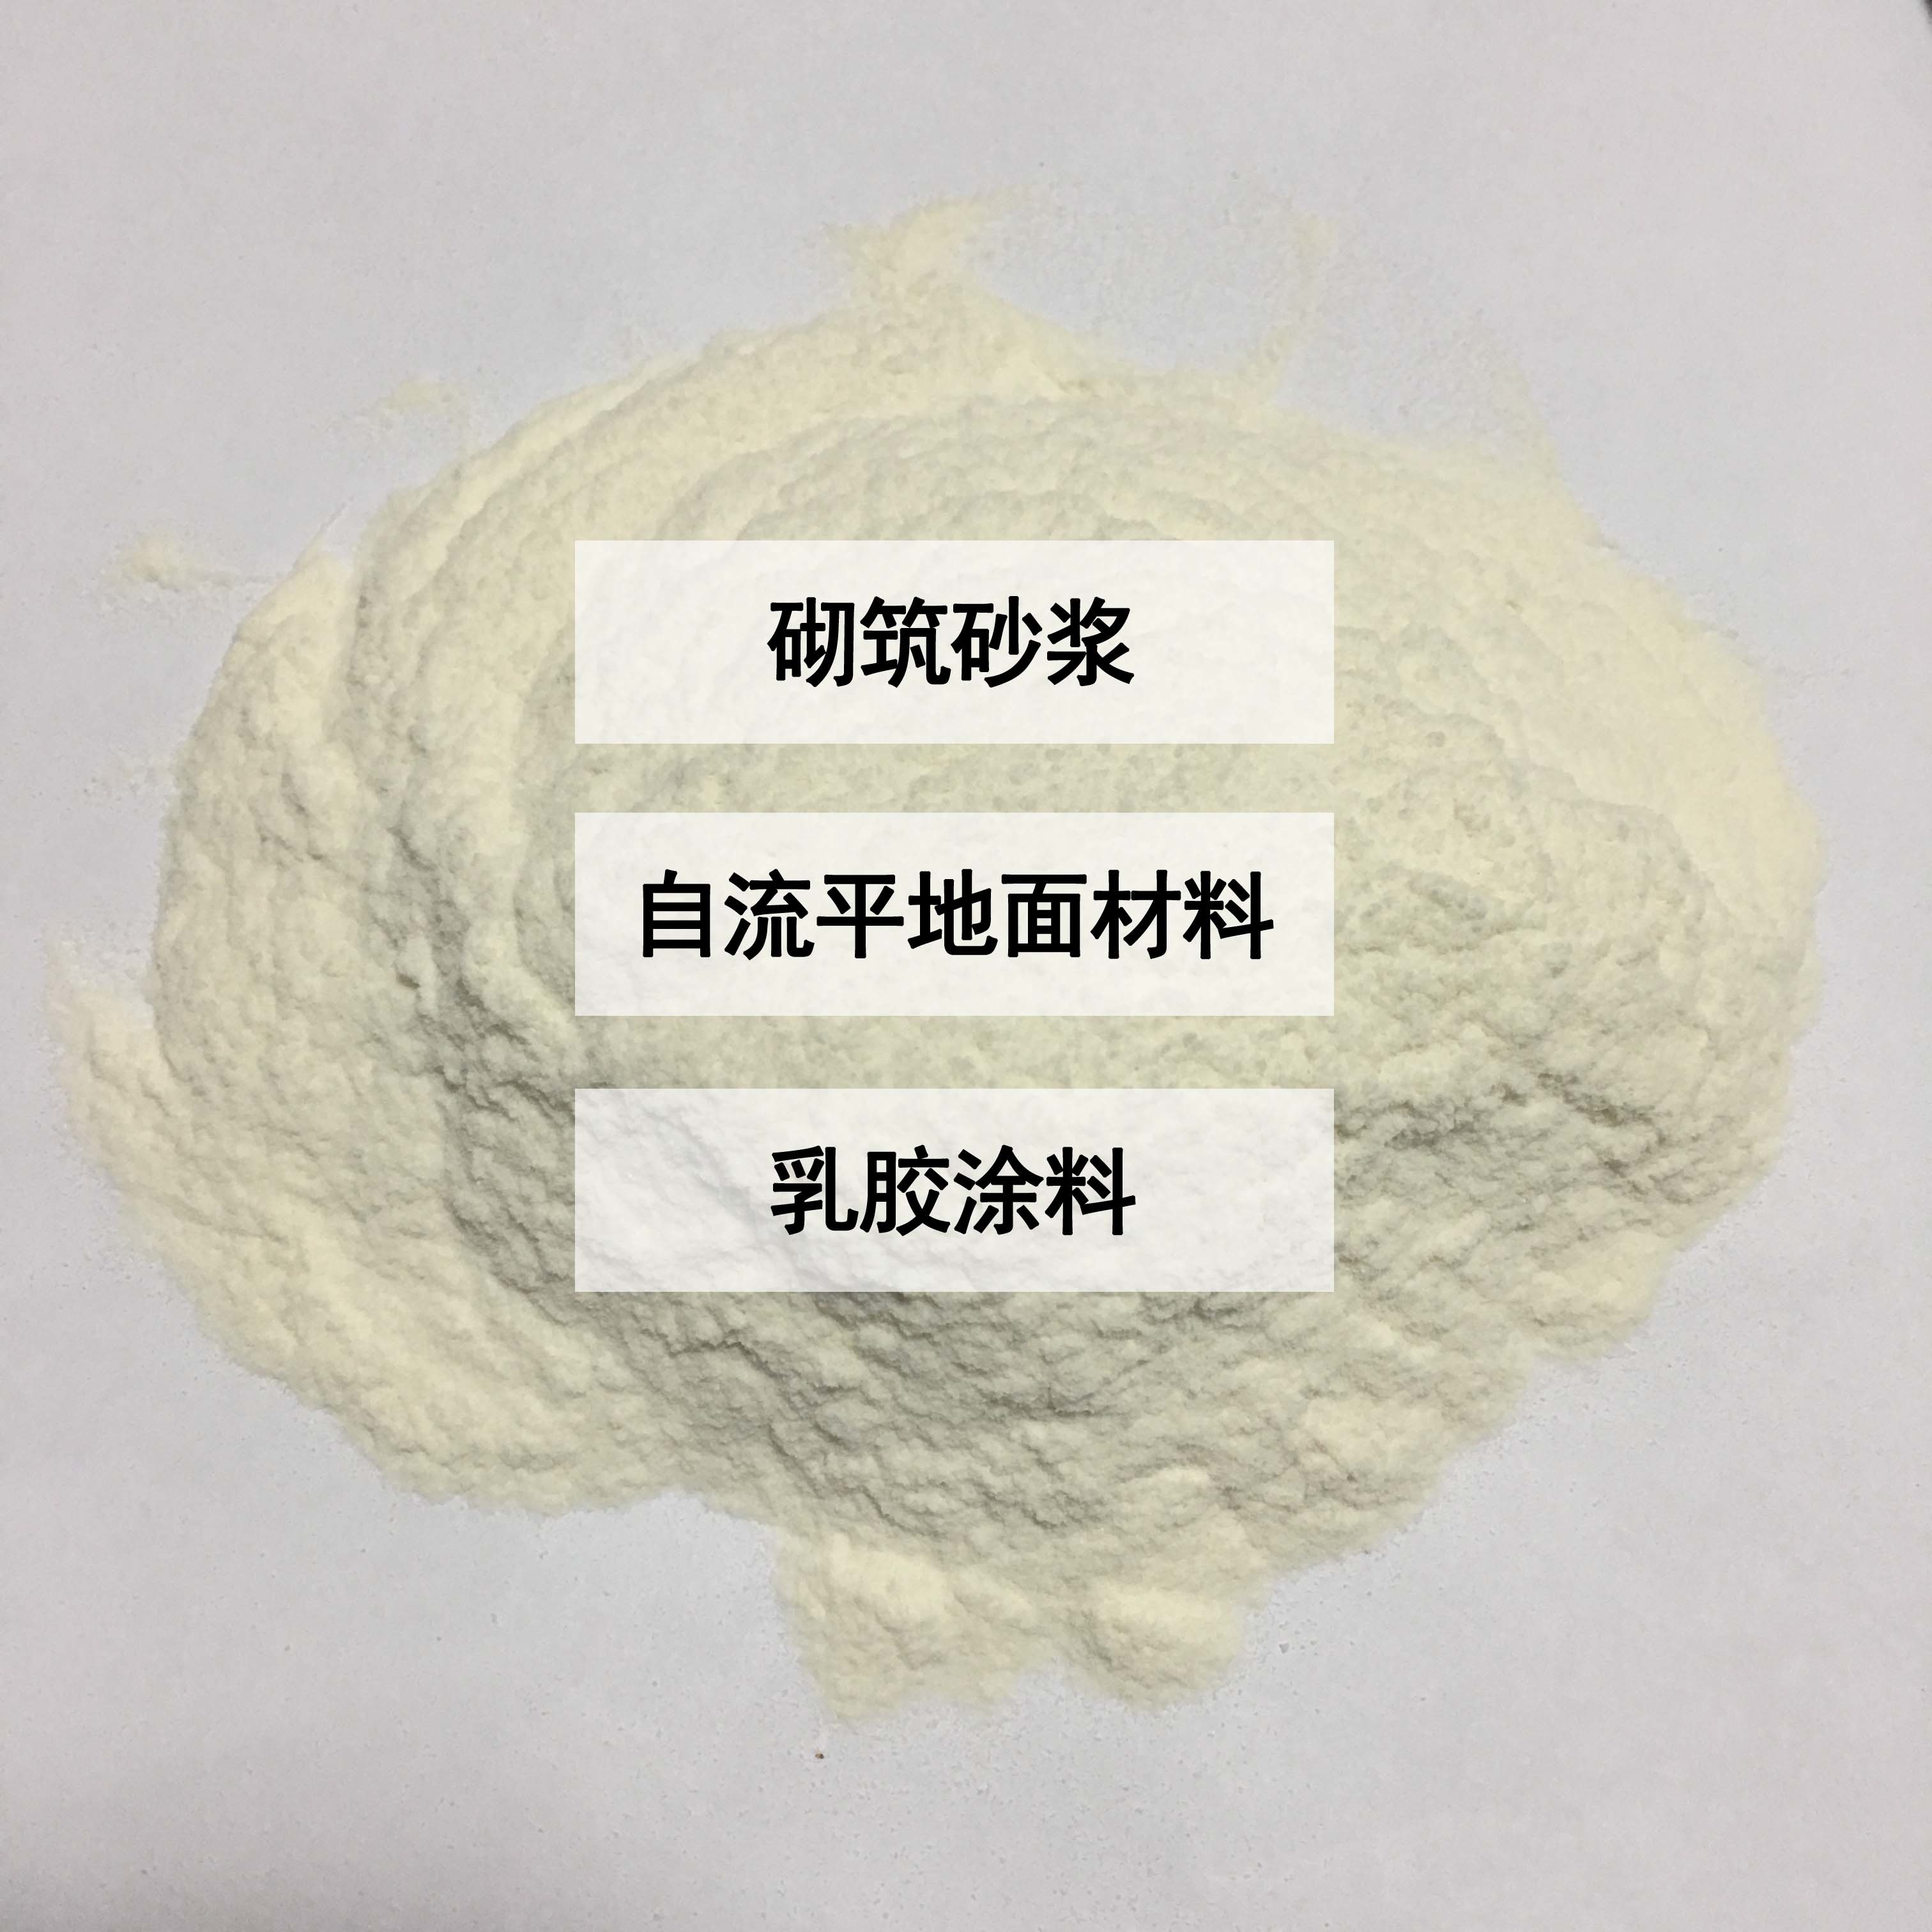 羟丙基甲基纤维素在抗裂砂浆中的作用